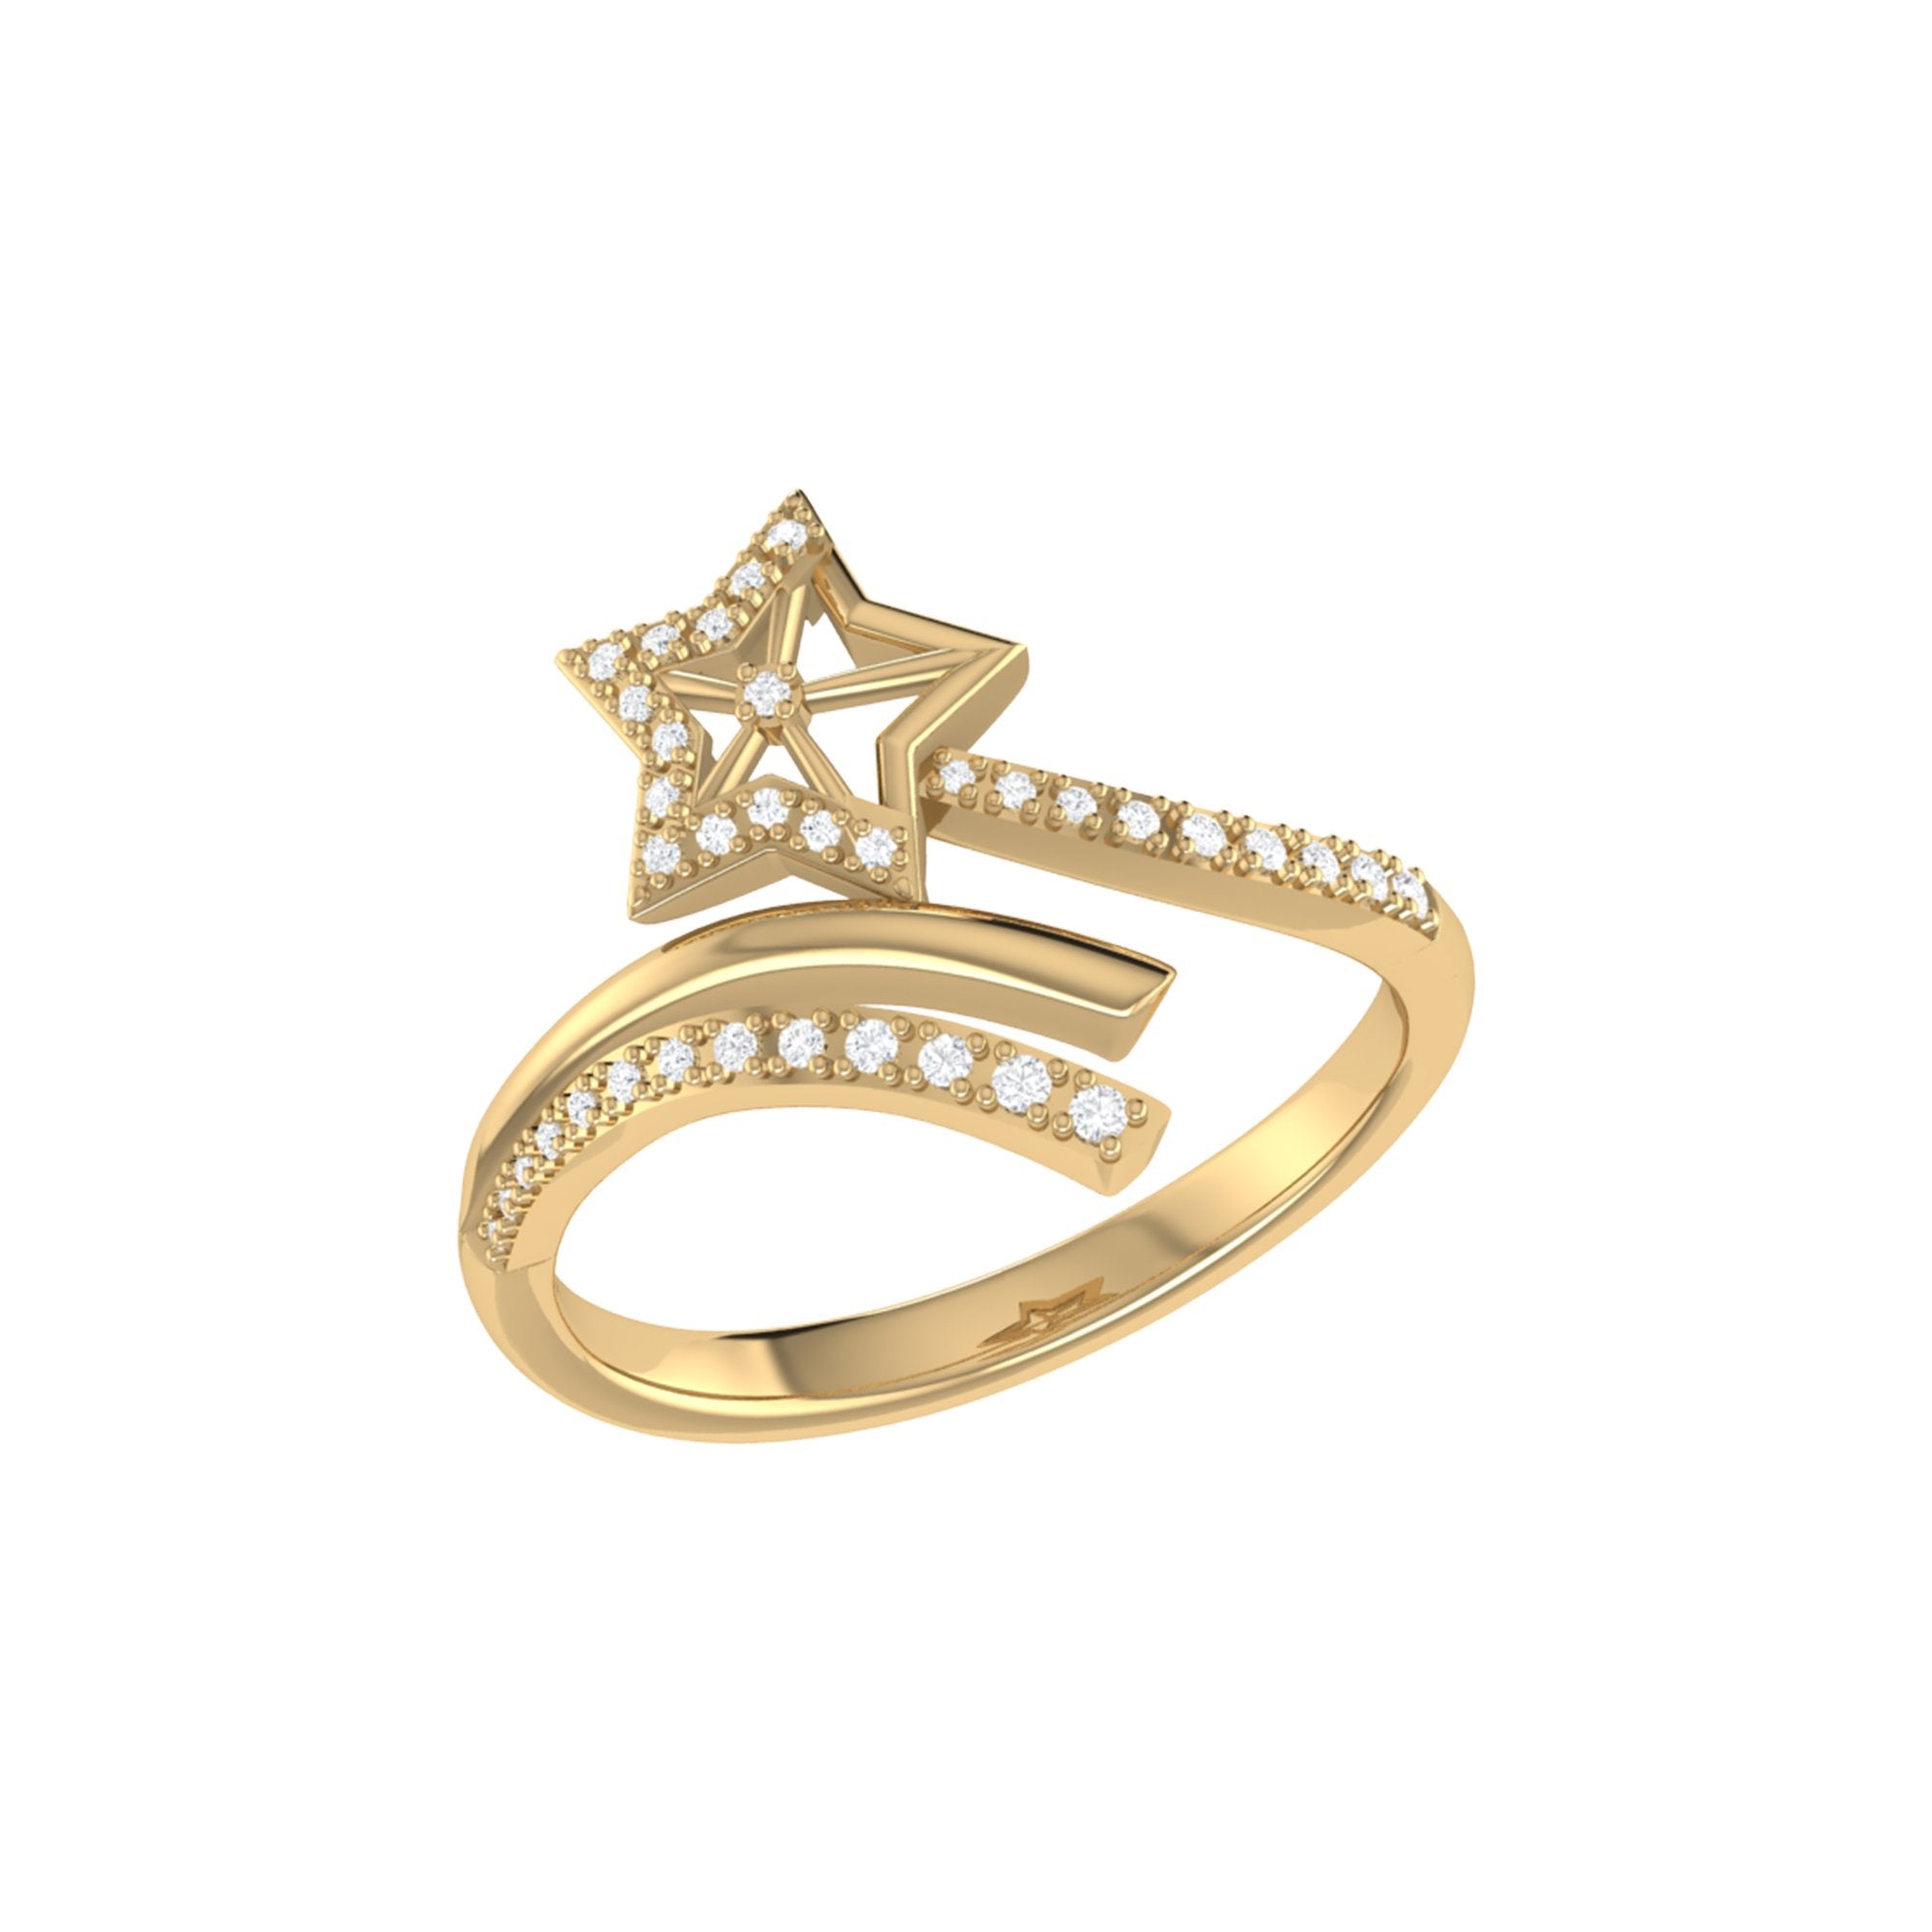 Star Spangled Night Diamond Ring in 14K Yellow Gold - Genuine Diamonds, Custom Sizes - Jewelry & Watches - Bijou Her -  -  - 